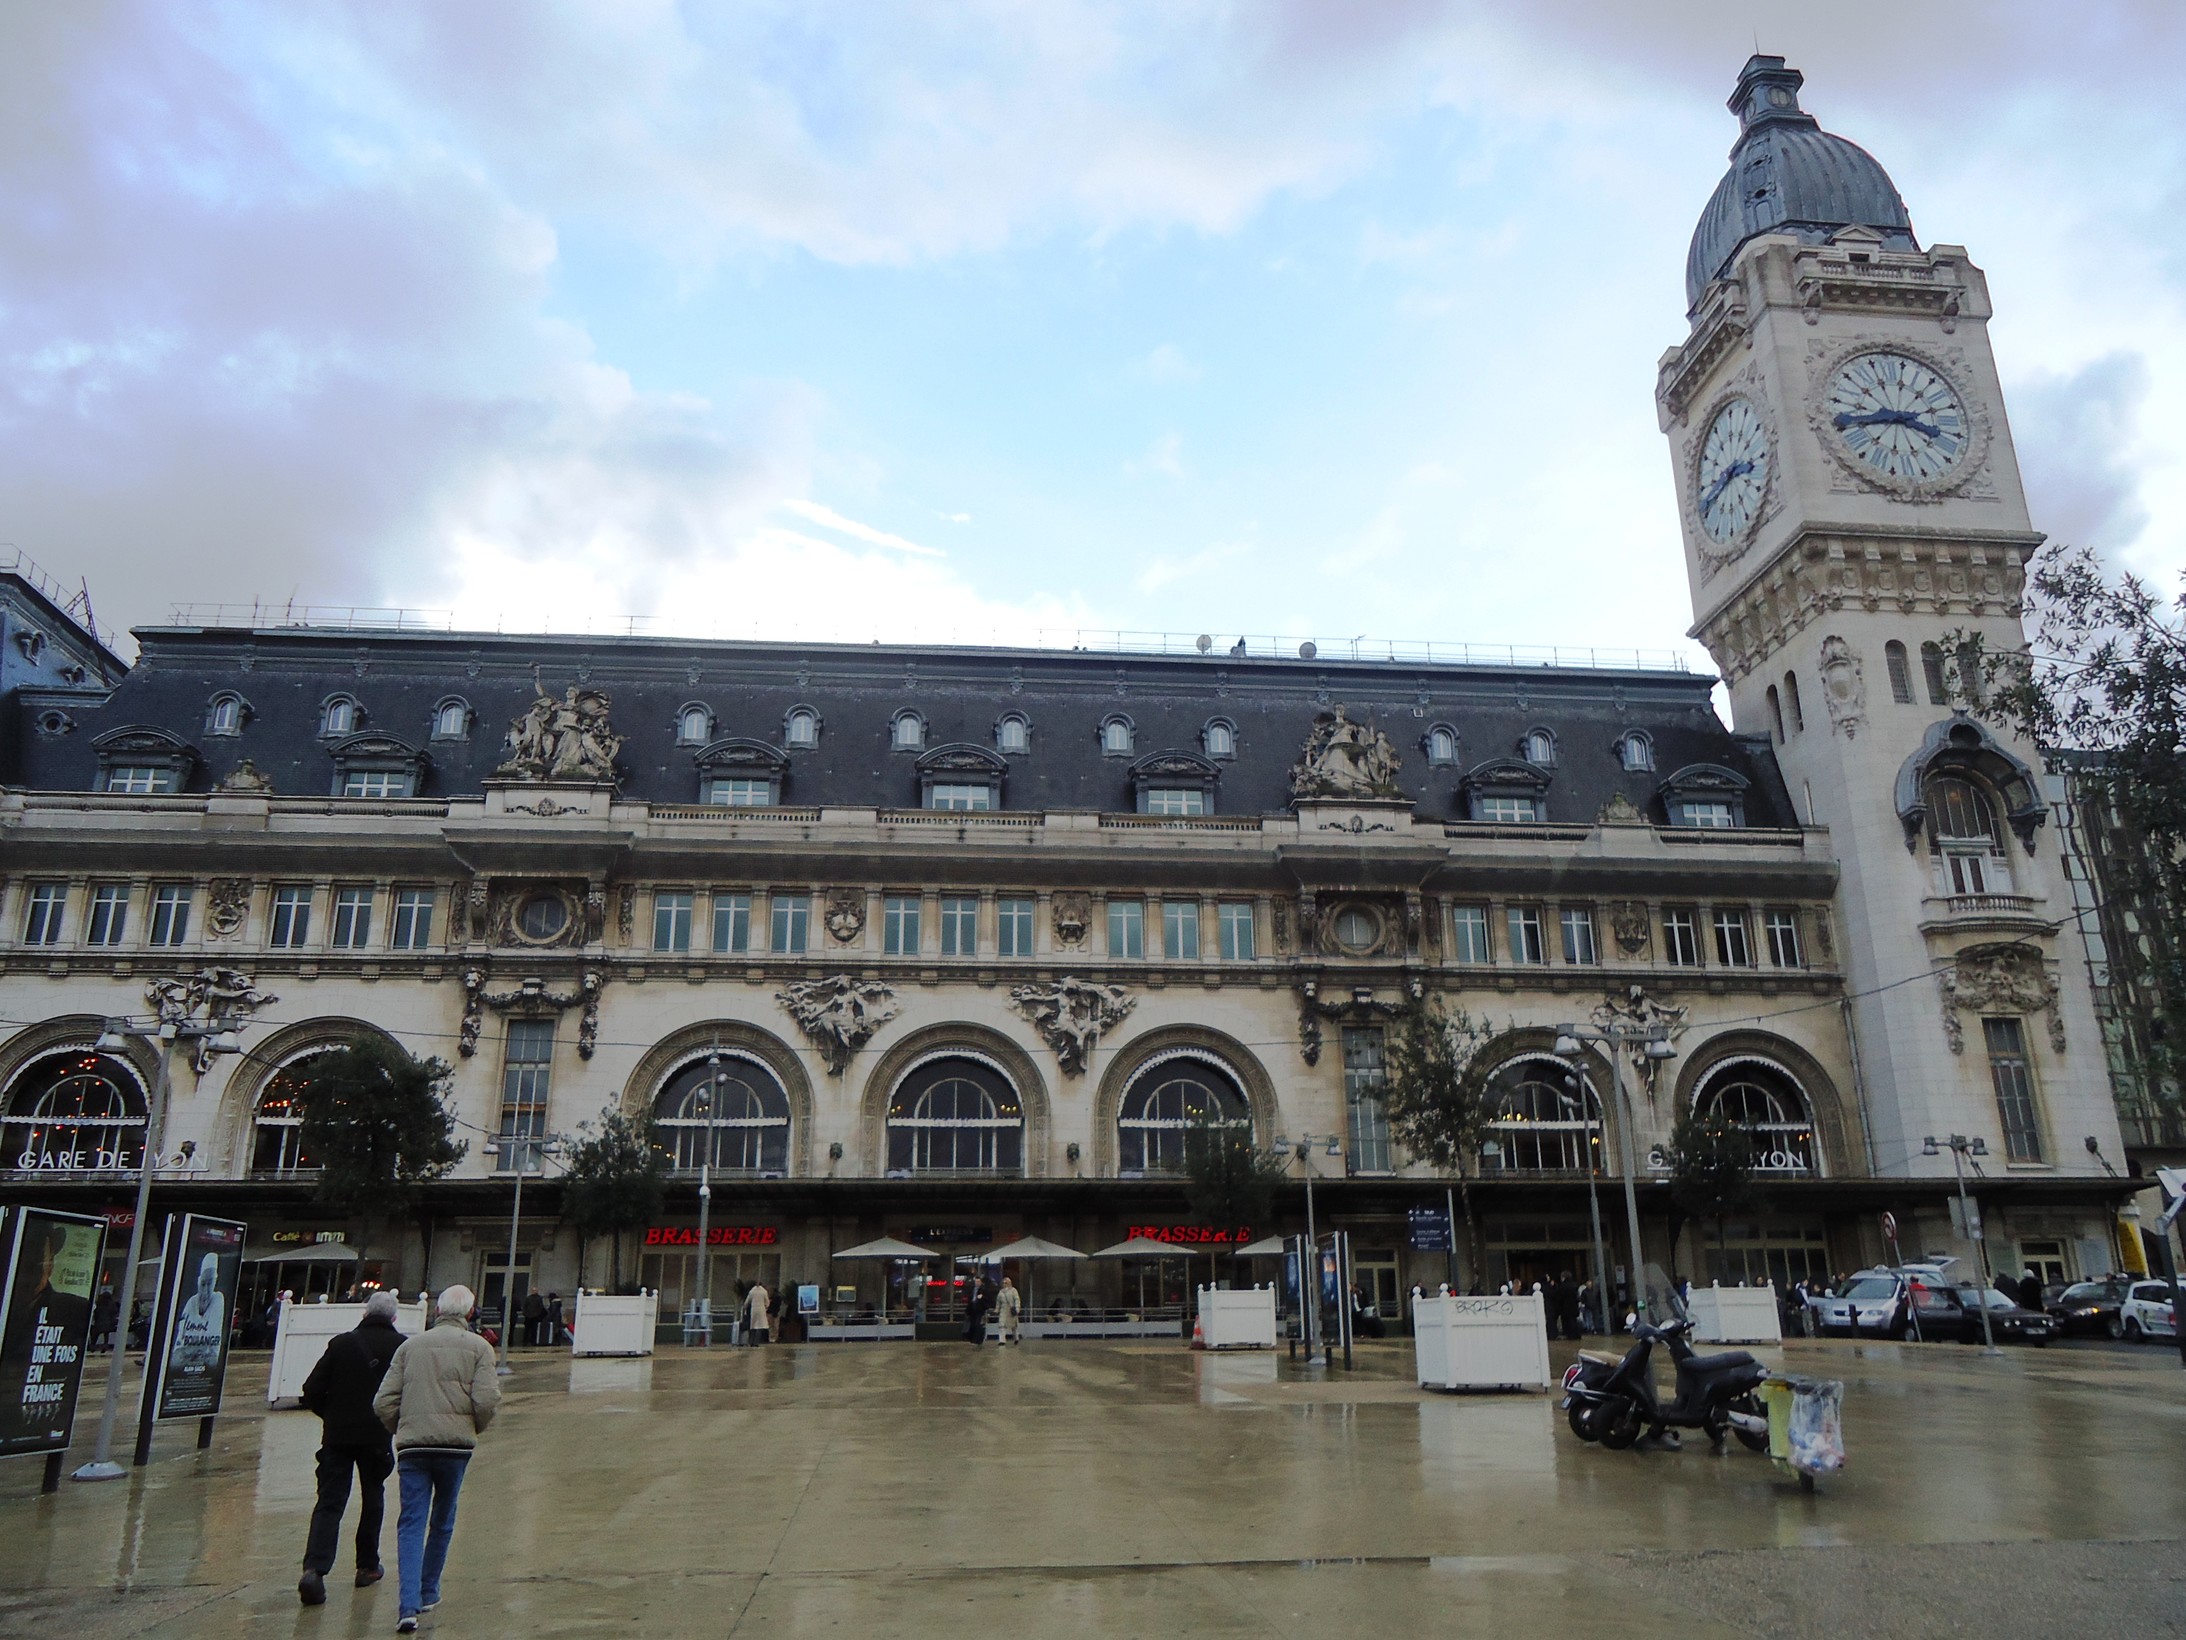 Der Gare de Lyon heute. "Big Ben", damit sich die Engländer heimisch fühlen